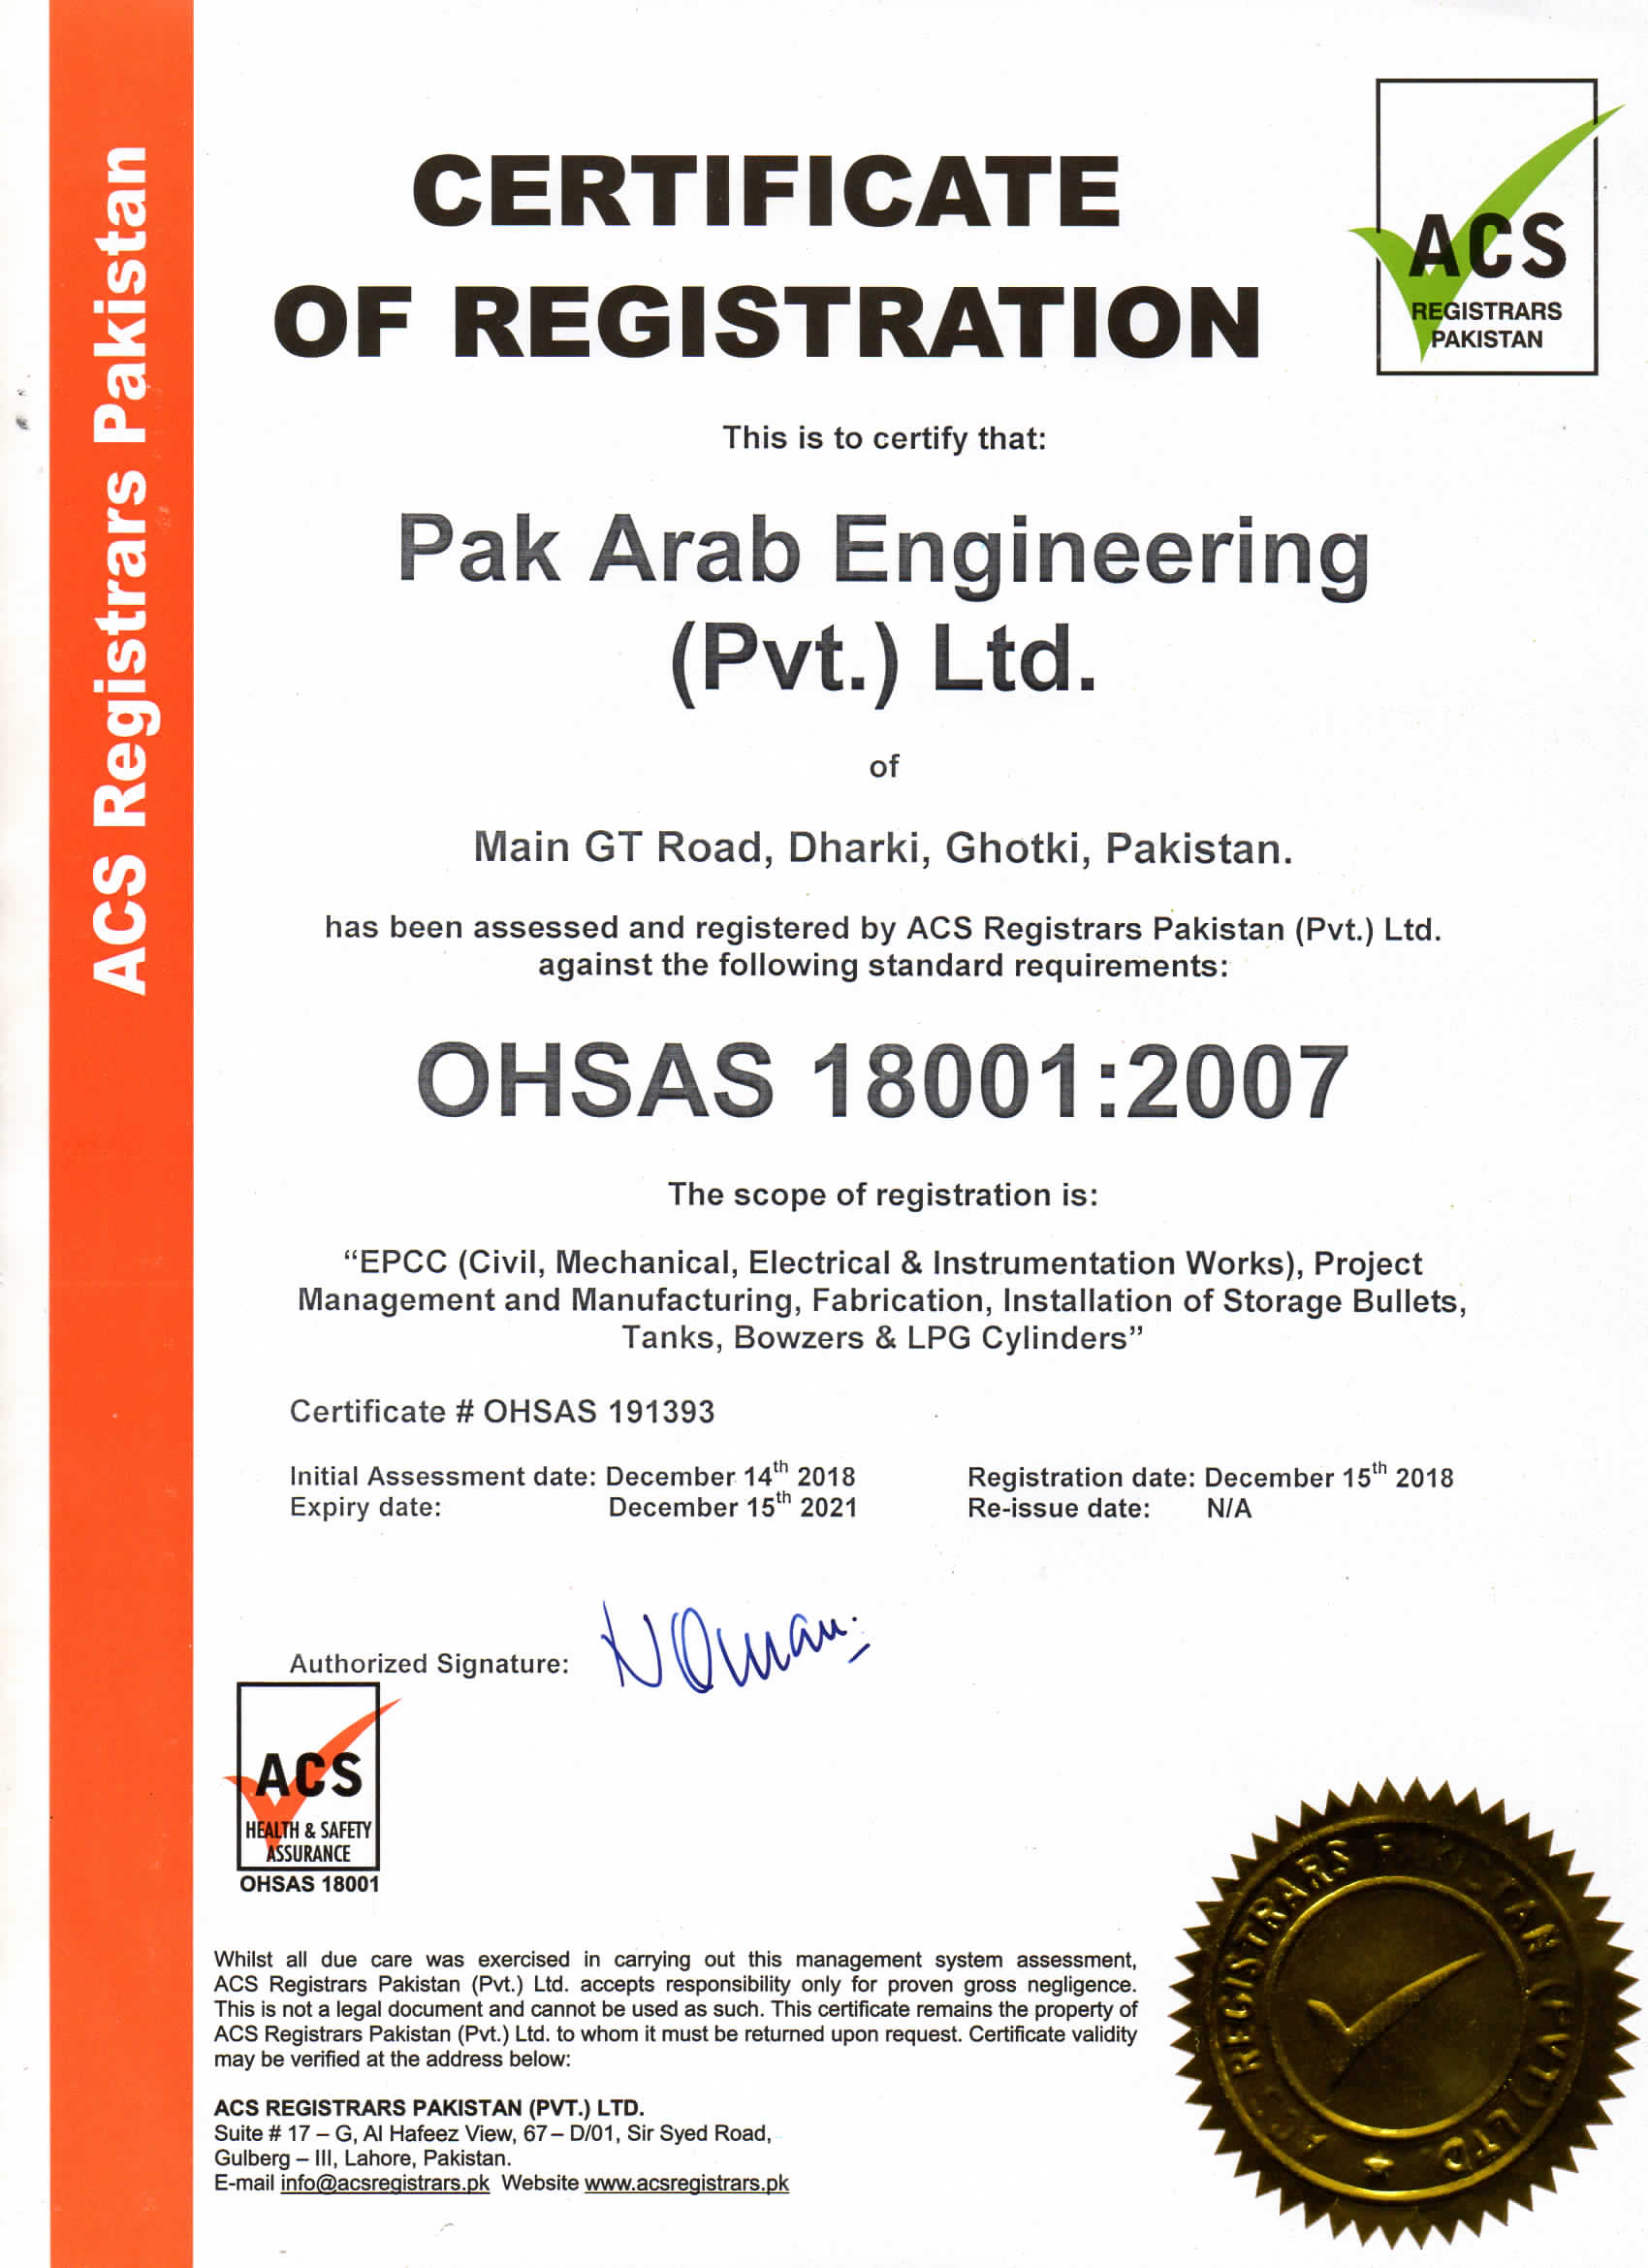 Pak Arab Engineering: OHSAS